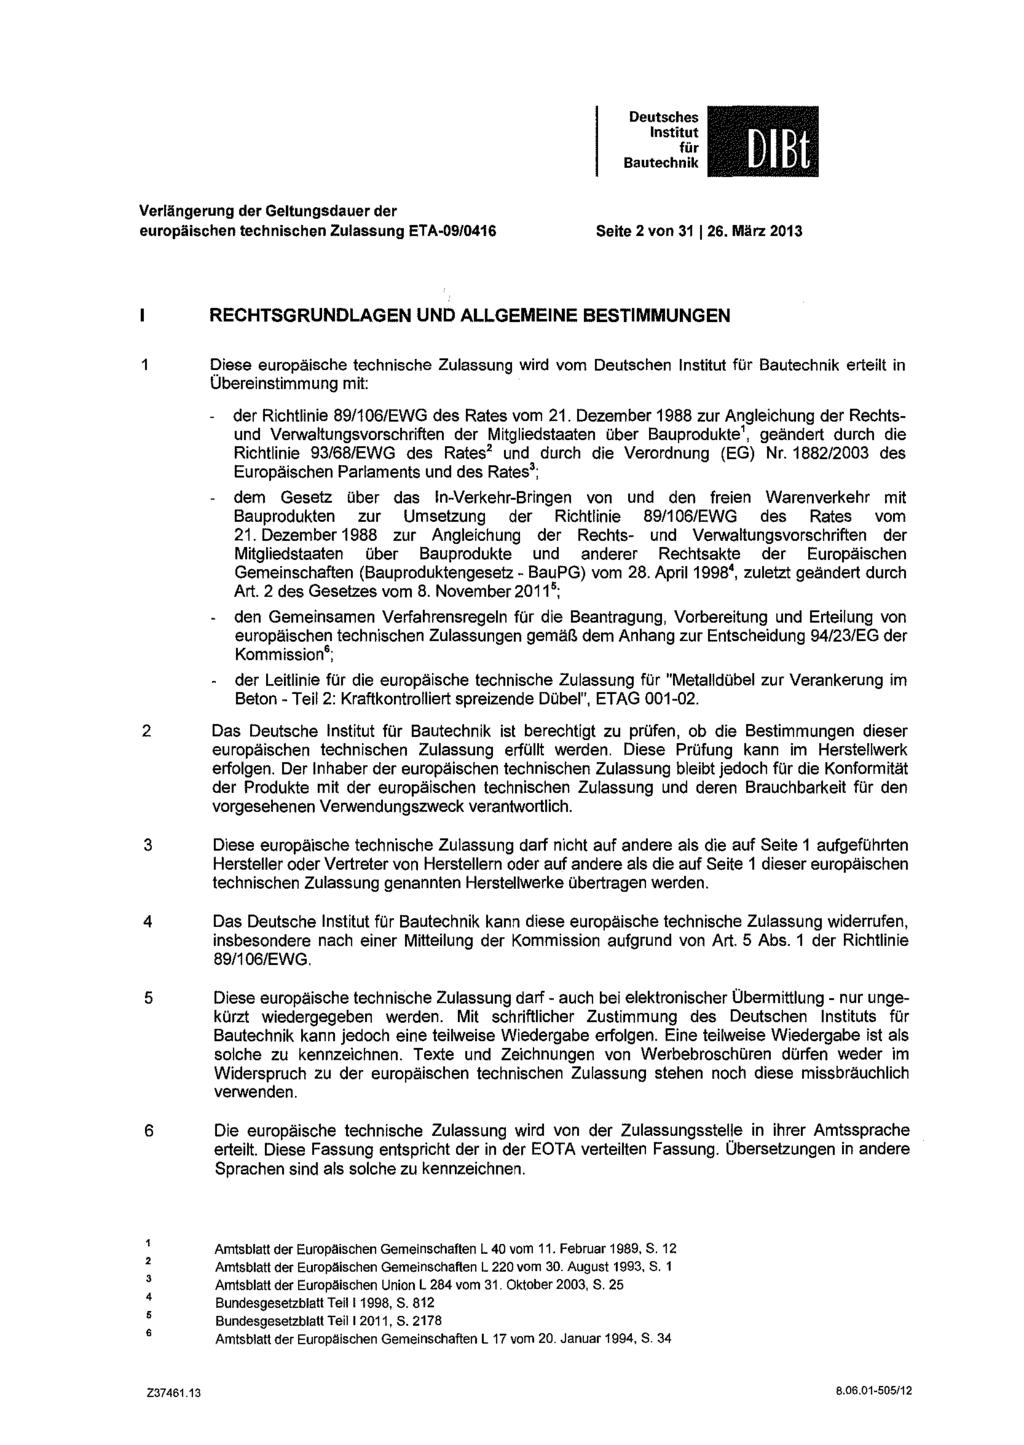 Verlängerung der Geltungsdauer der europäischen technischen Zulassung ETA-09/0416 Seite 2 von 31 126.